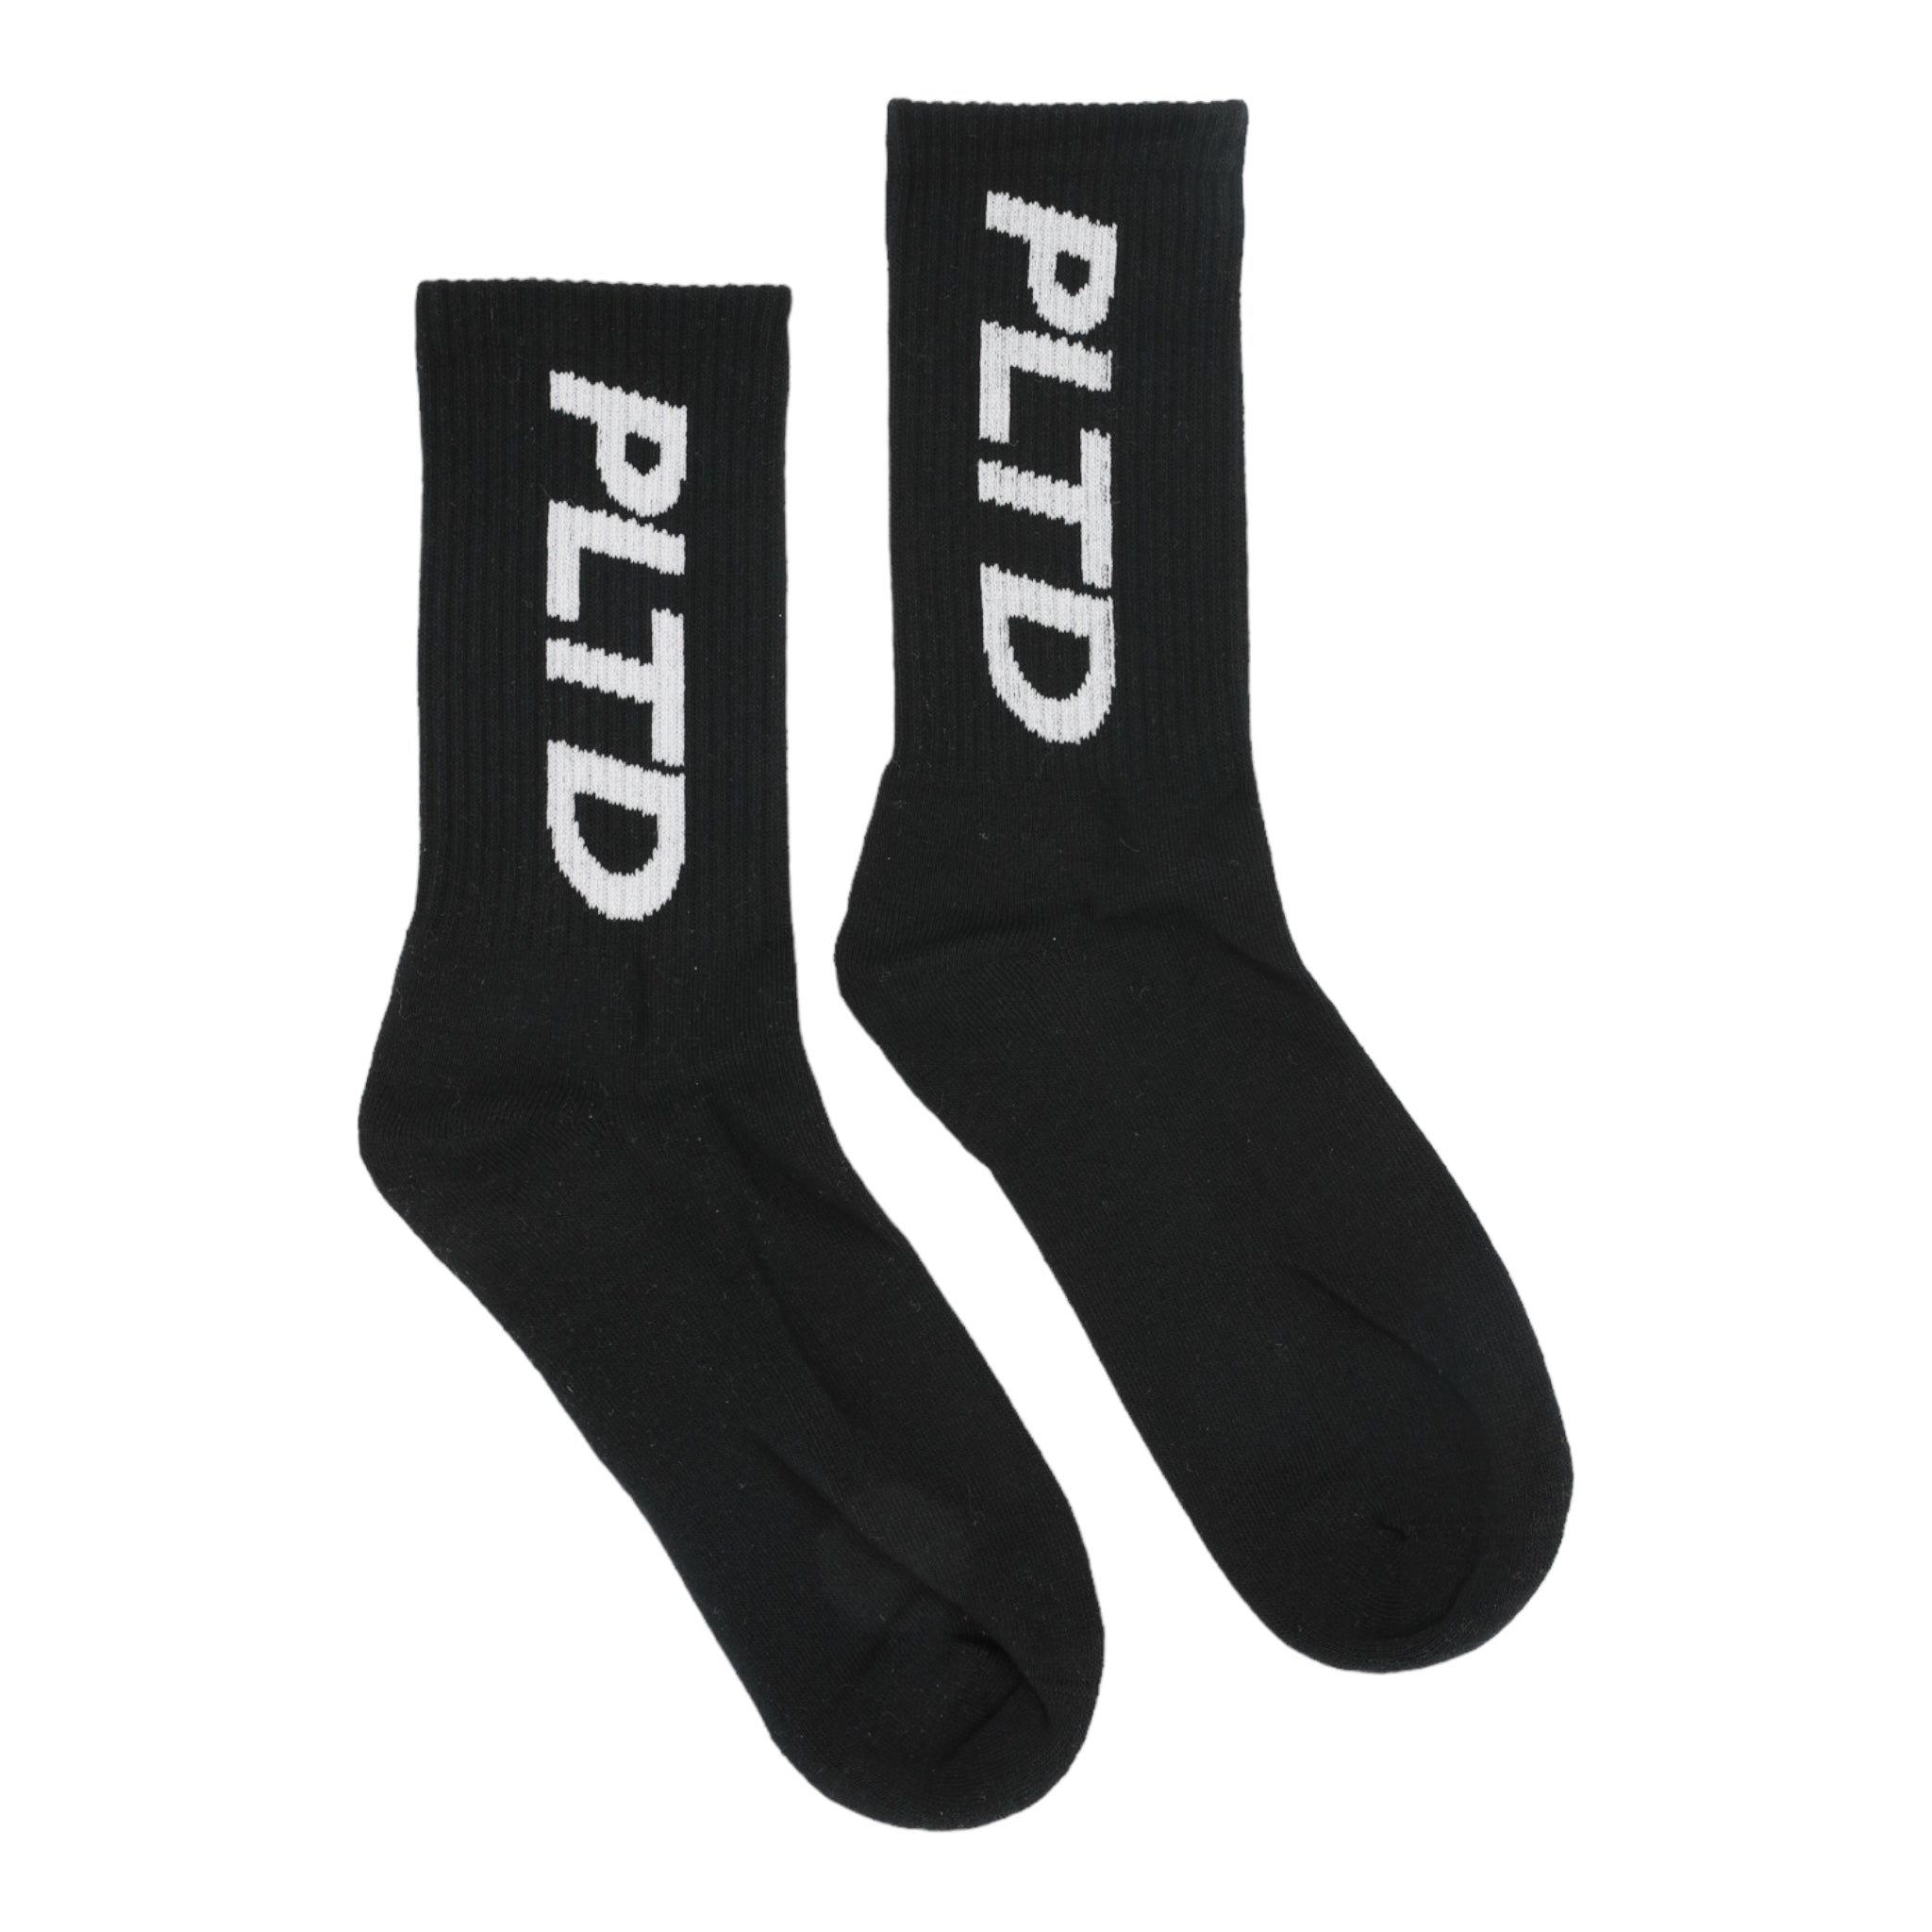 Team PLTD - Black Terry Cloth Socks